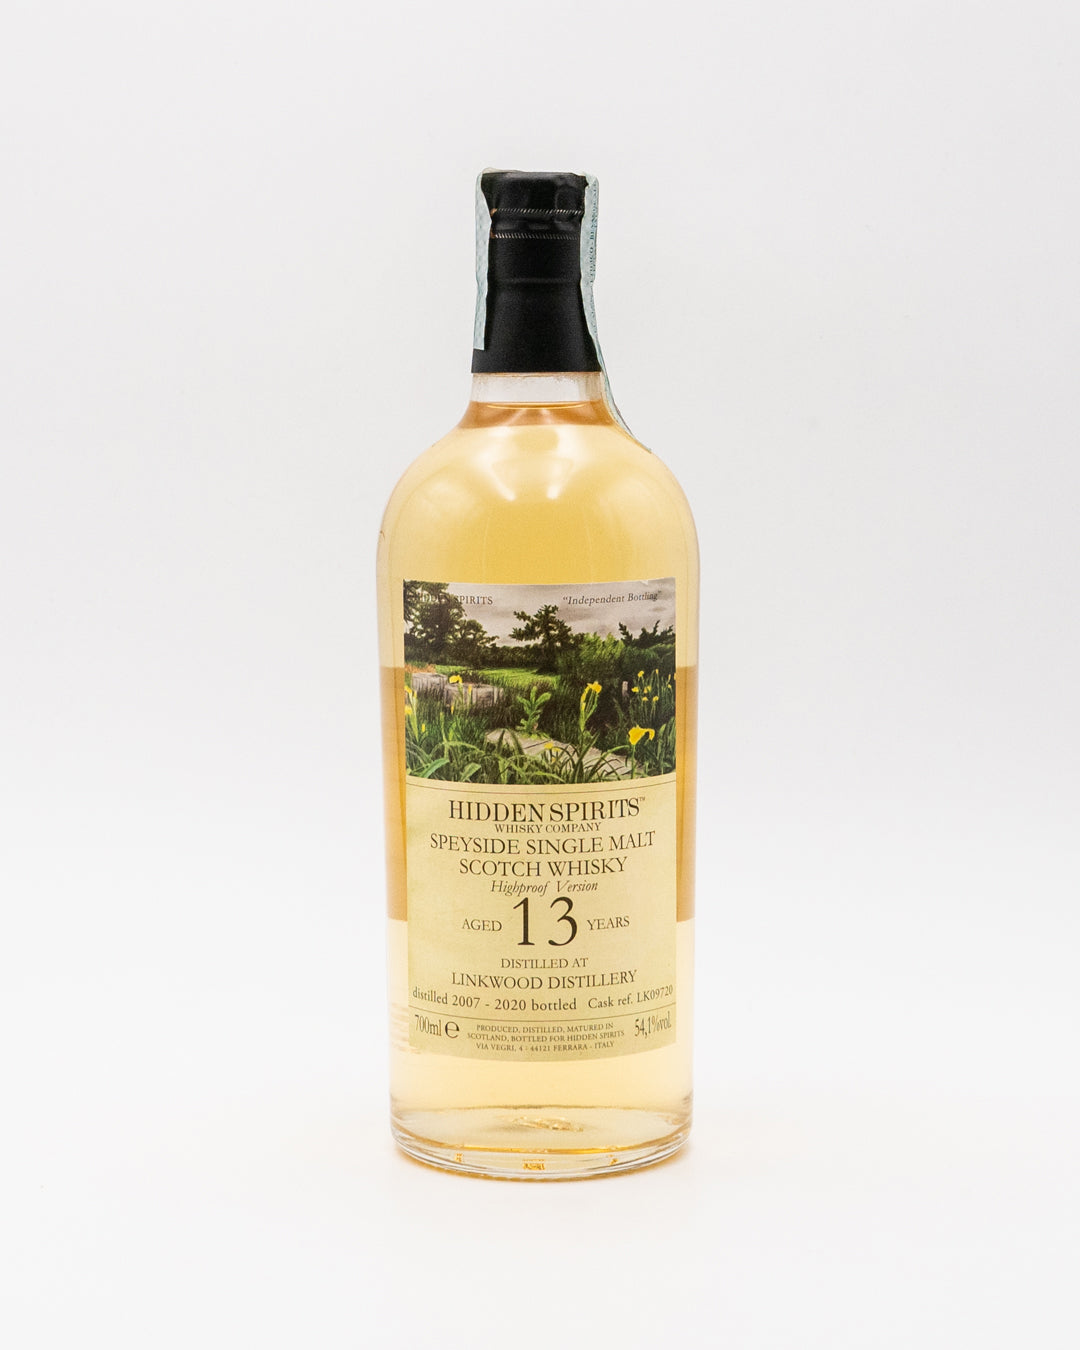 whisky-13-y-o-single-malt-scotch-hidden-spirits-linkwood-distillery-54-1-700ml